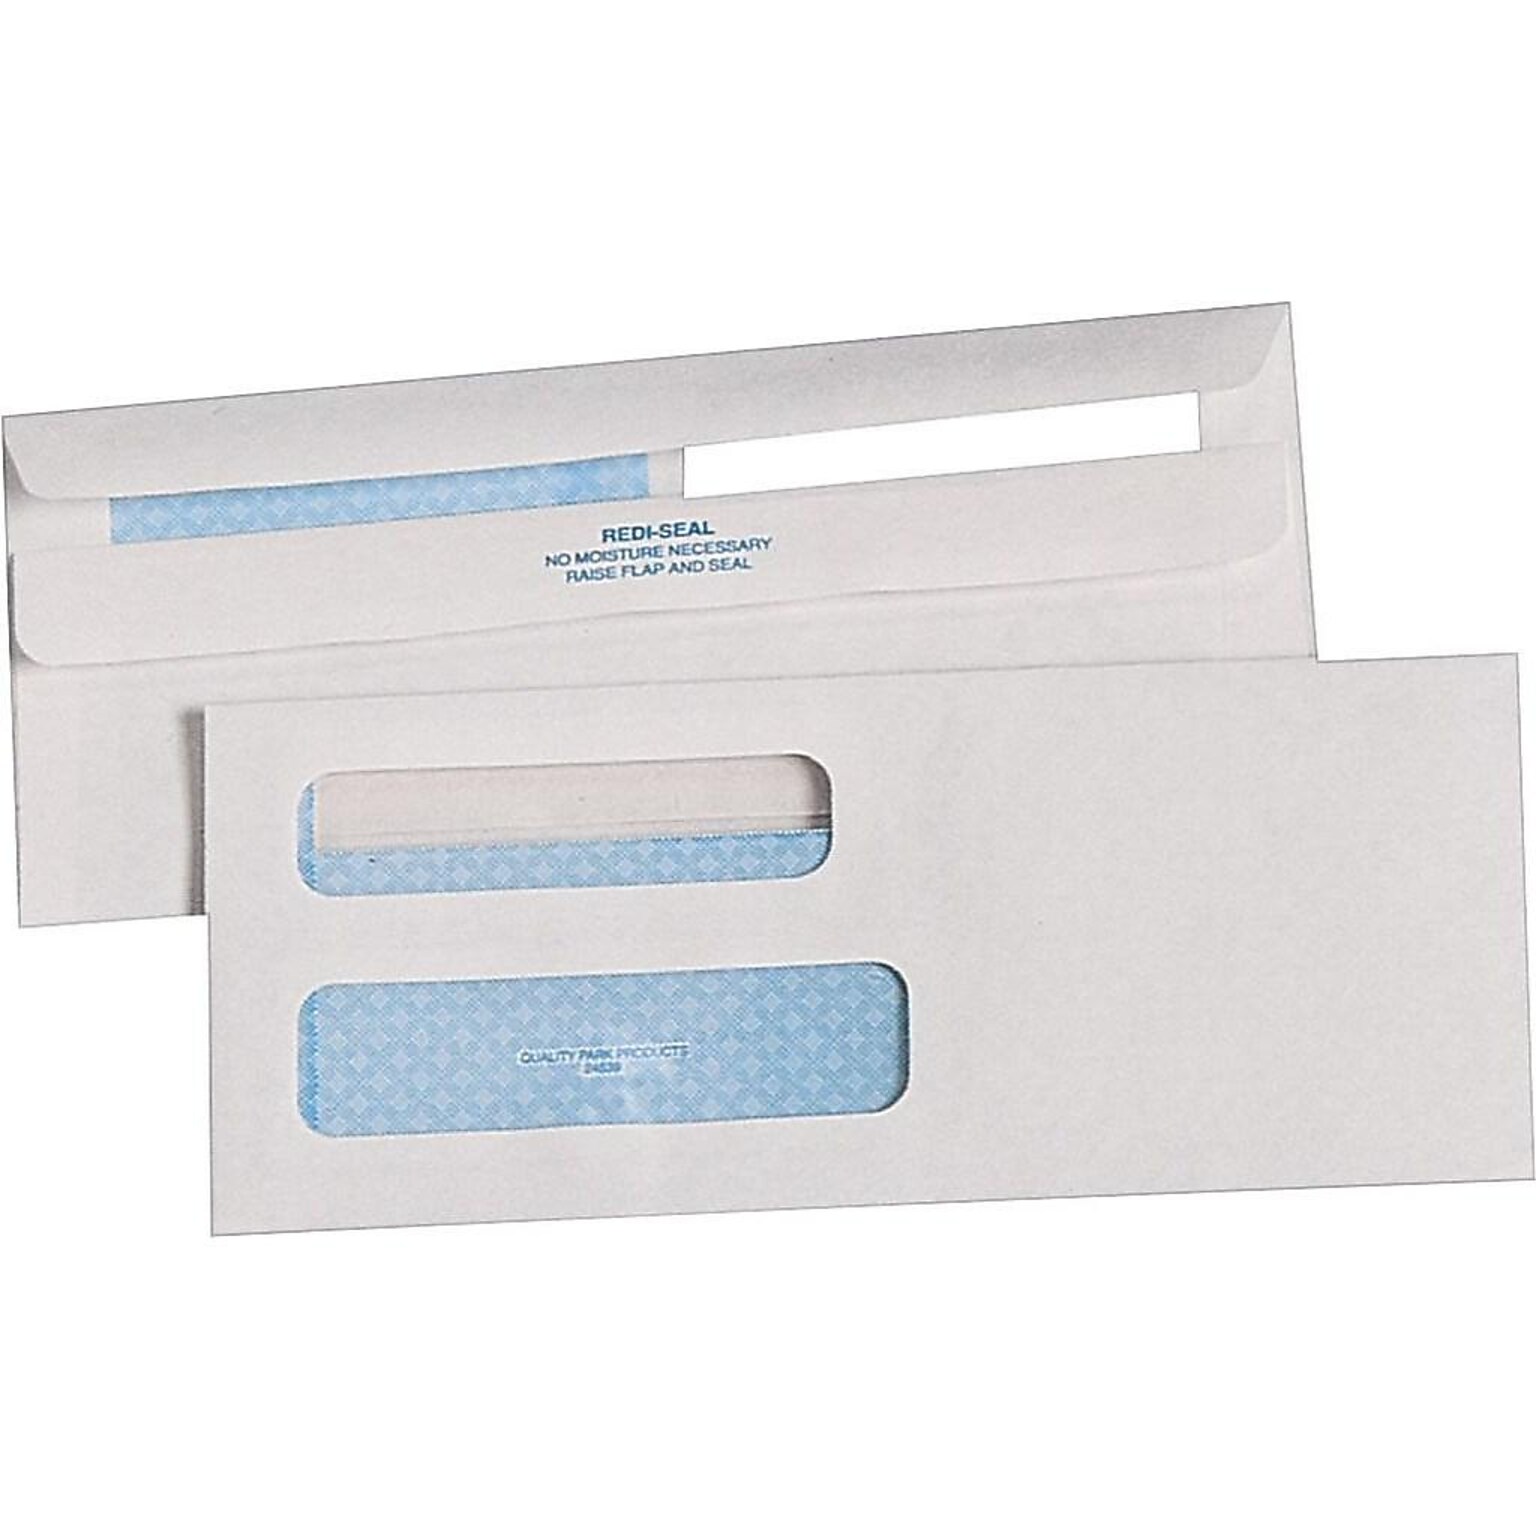 Quality Park Redi-Seal Security Tinted #8 5/8 Double Window Envelopes, 3-5/8 x 8-5/8, White, 500/Box (QUA24539)